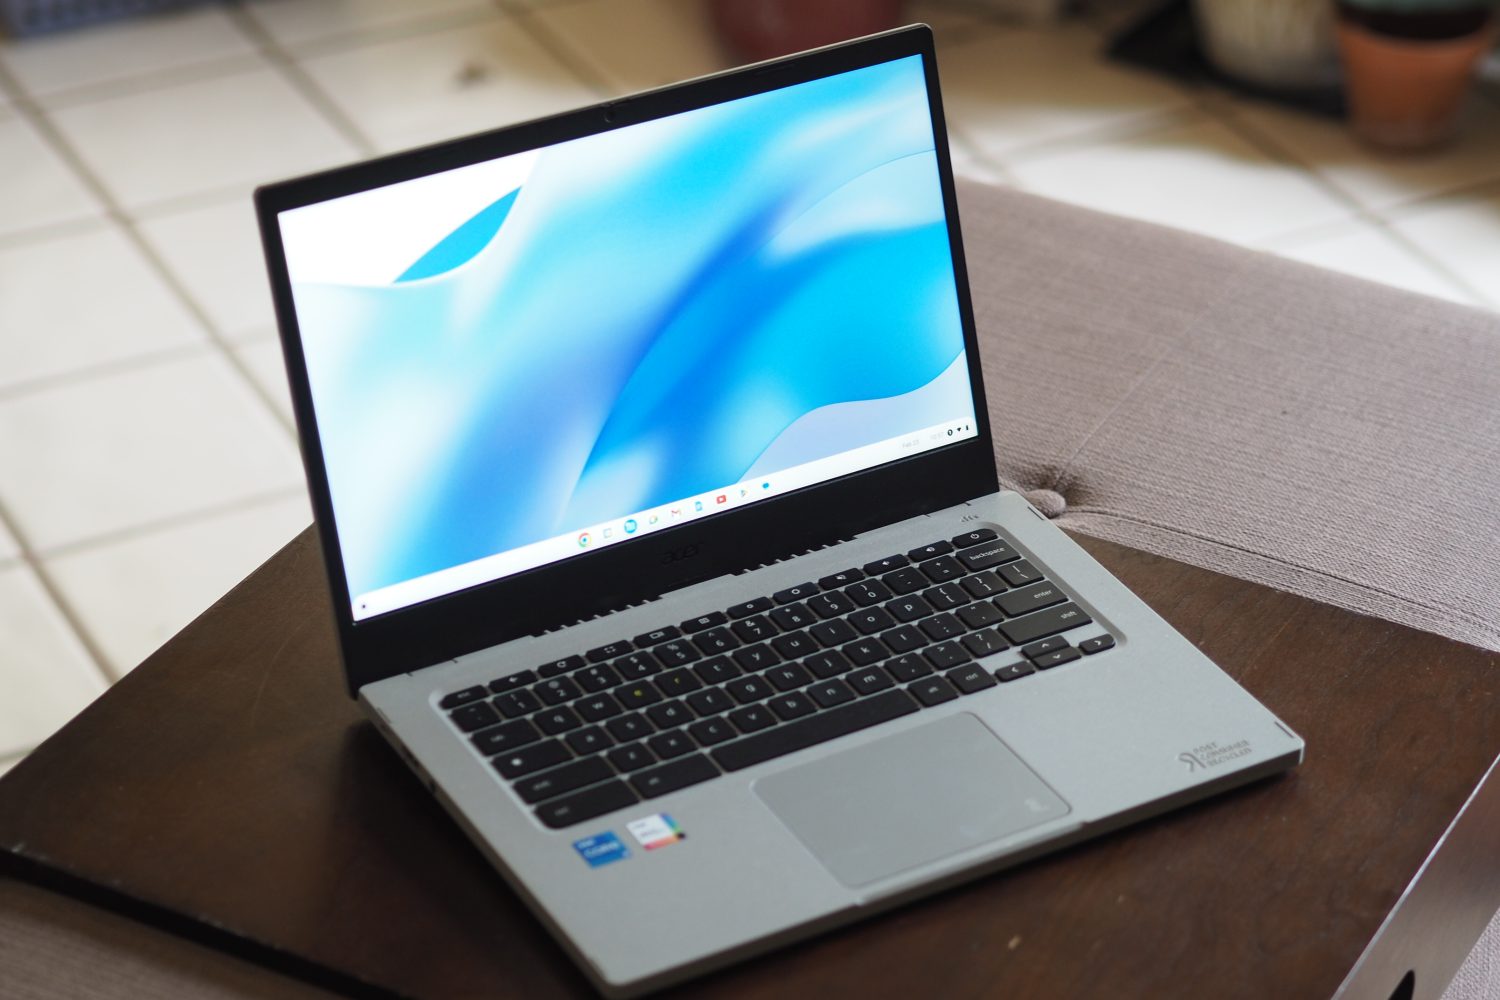 Visão frontal angular do Acer Chromebook Vero 514 mostrando a tela e o teclado.